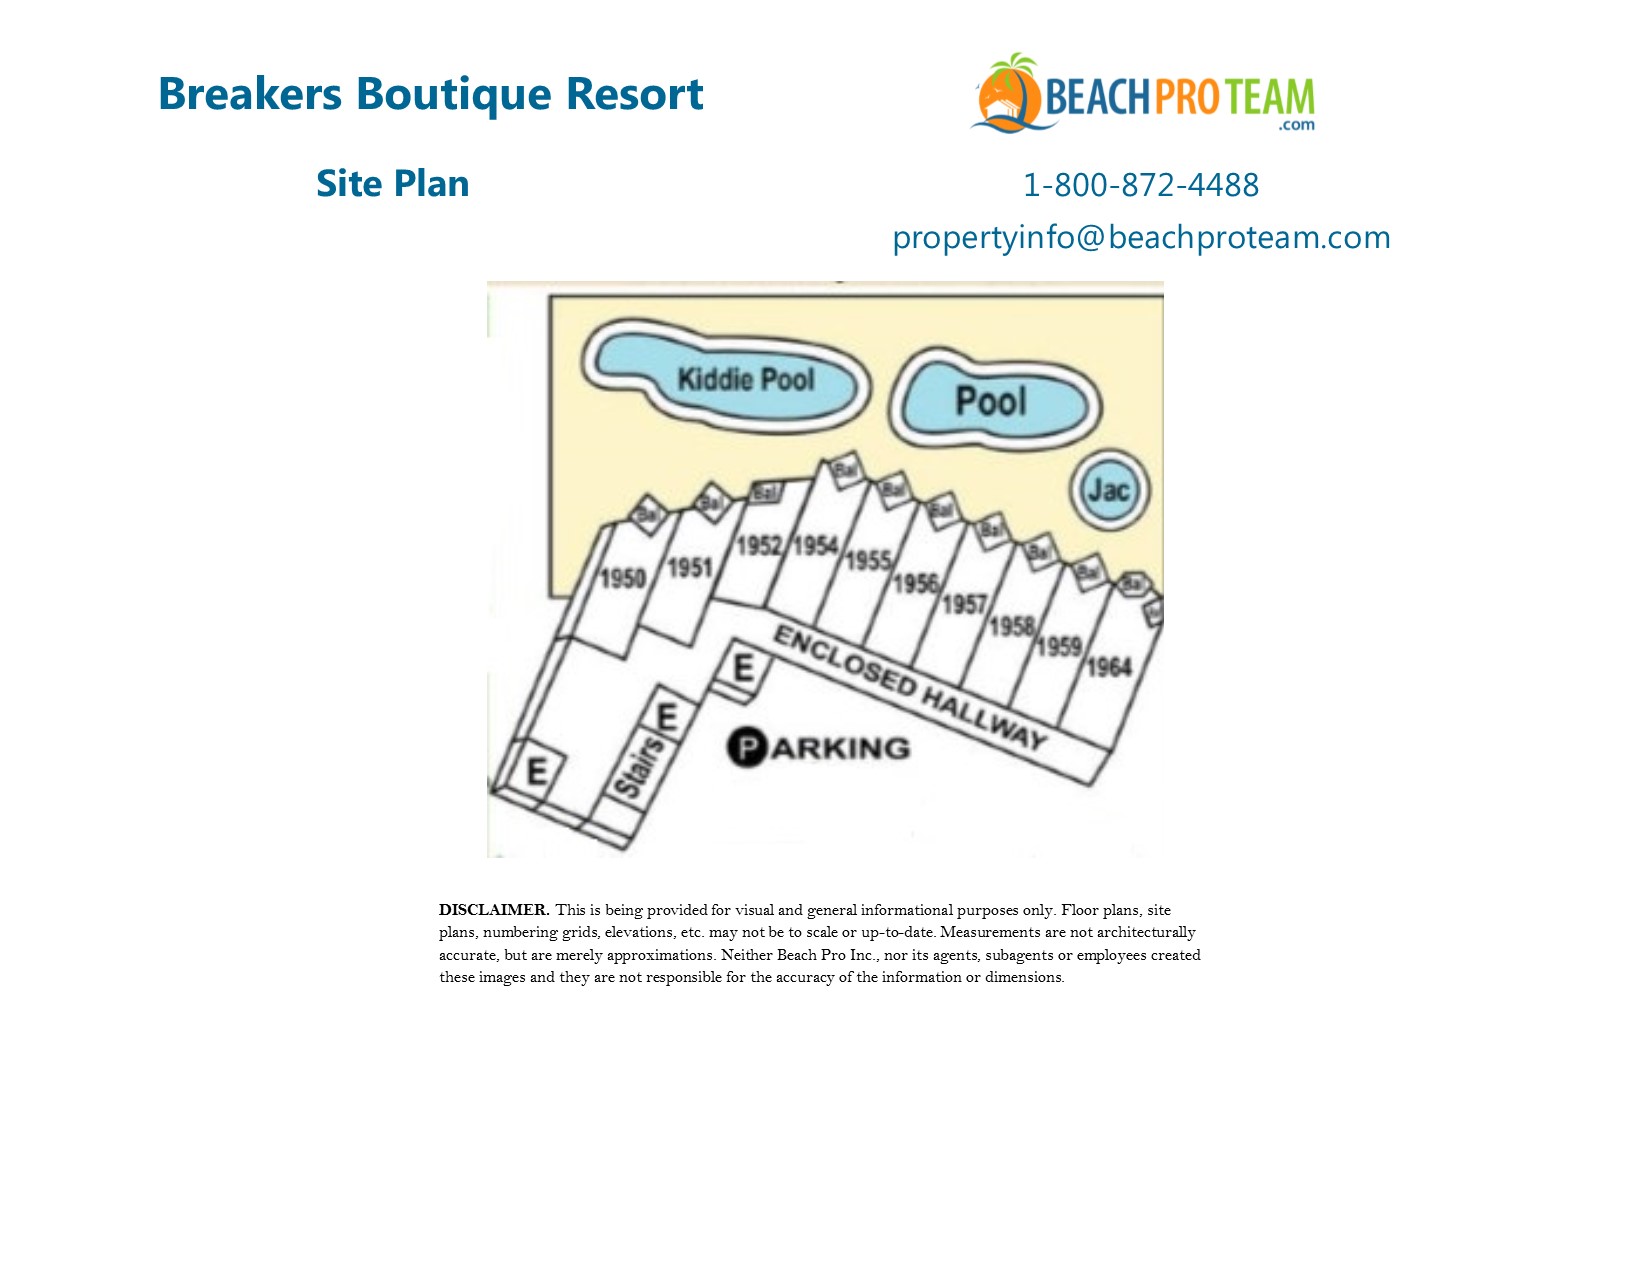 Breakers Boutique Site Plan